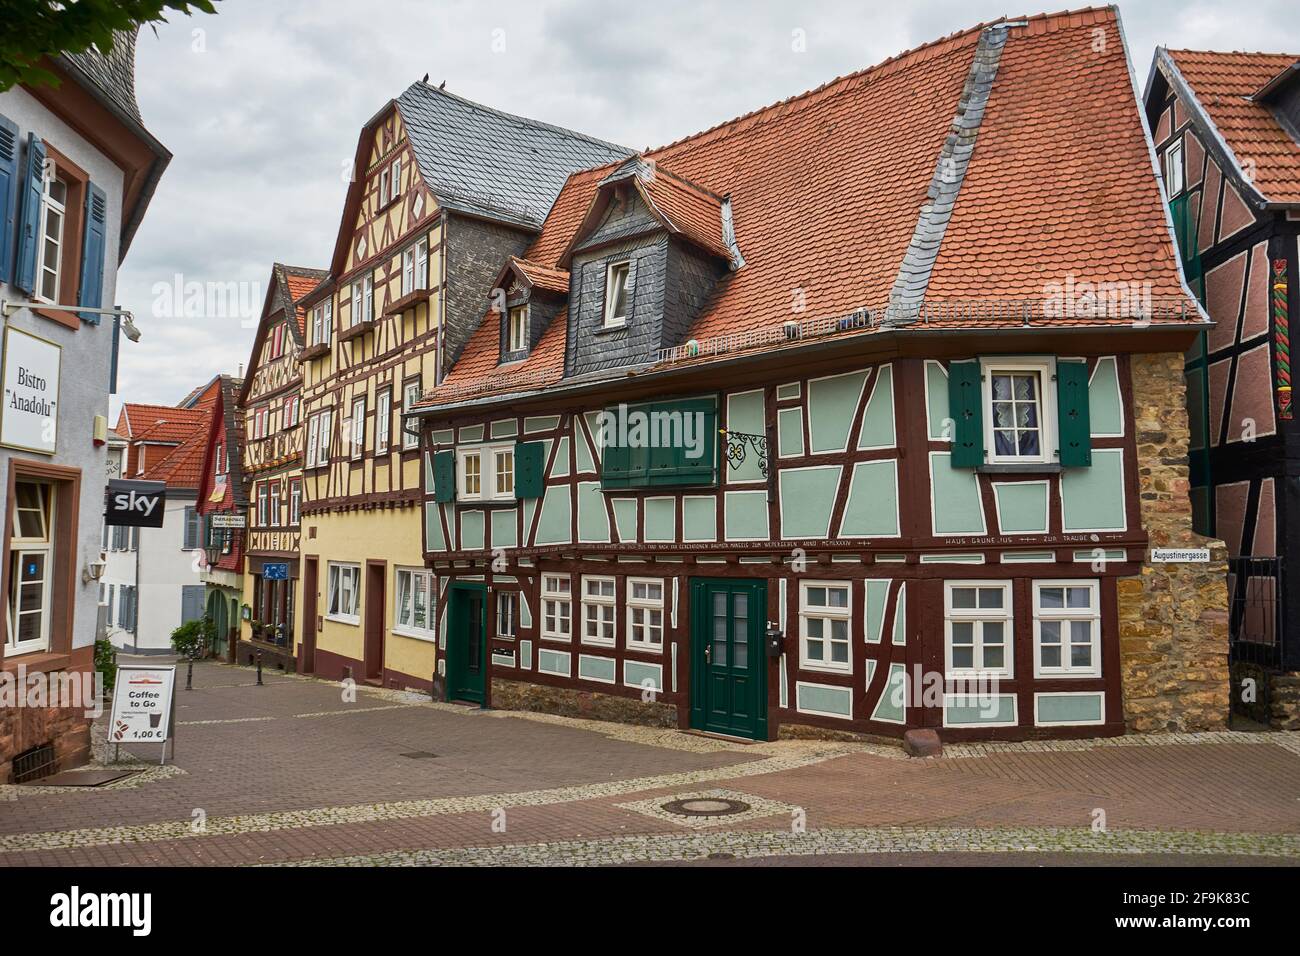 Fachwerkhäuser in der Altstadt von Friedberg, Hessen, Deutschland Stock Photo